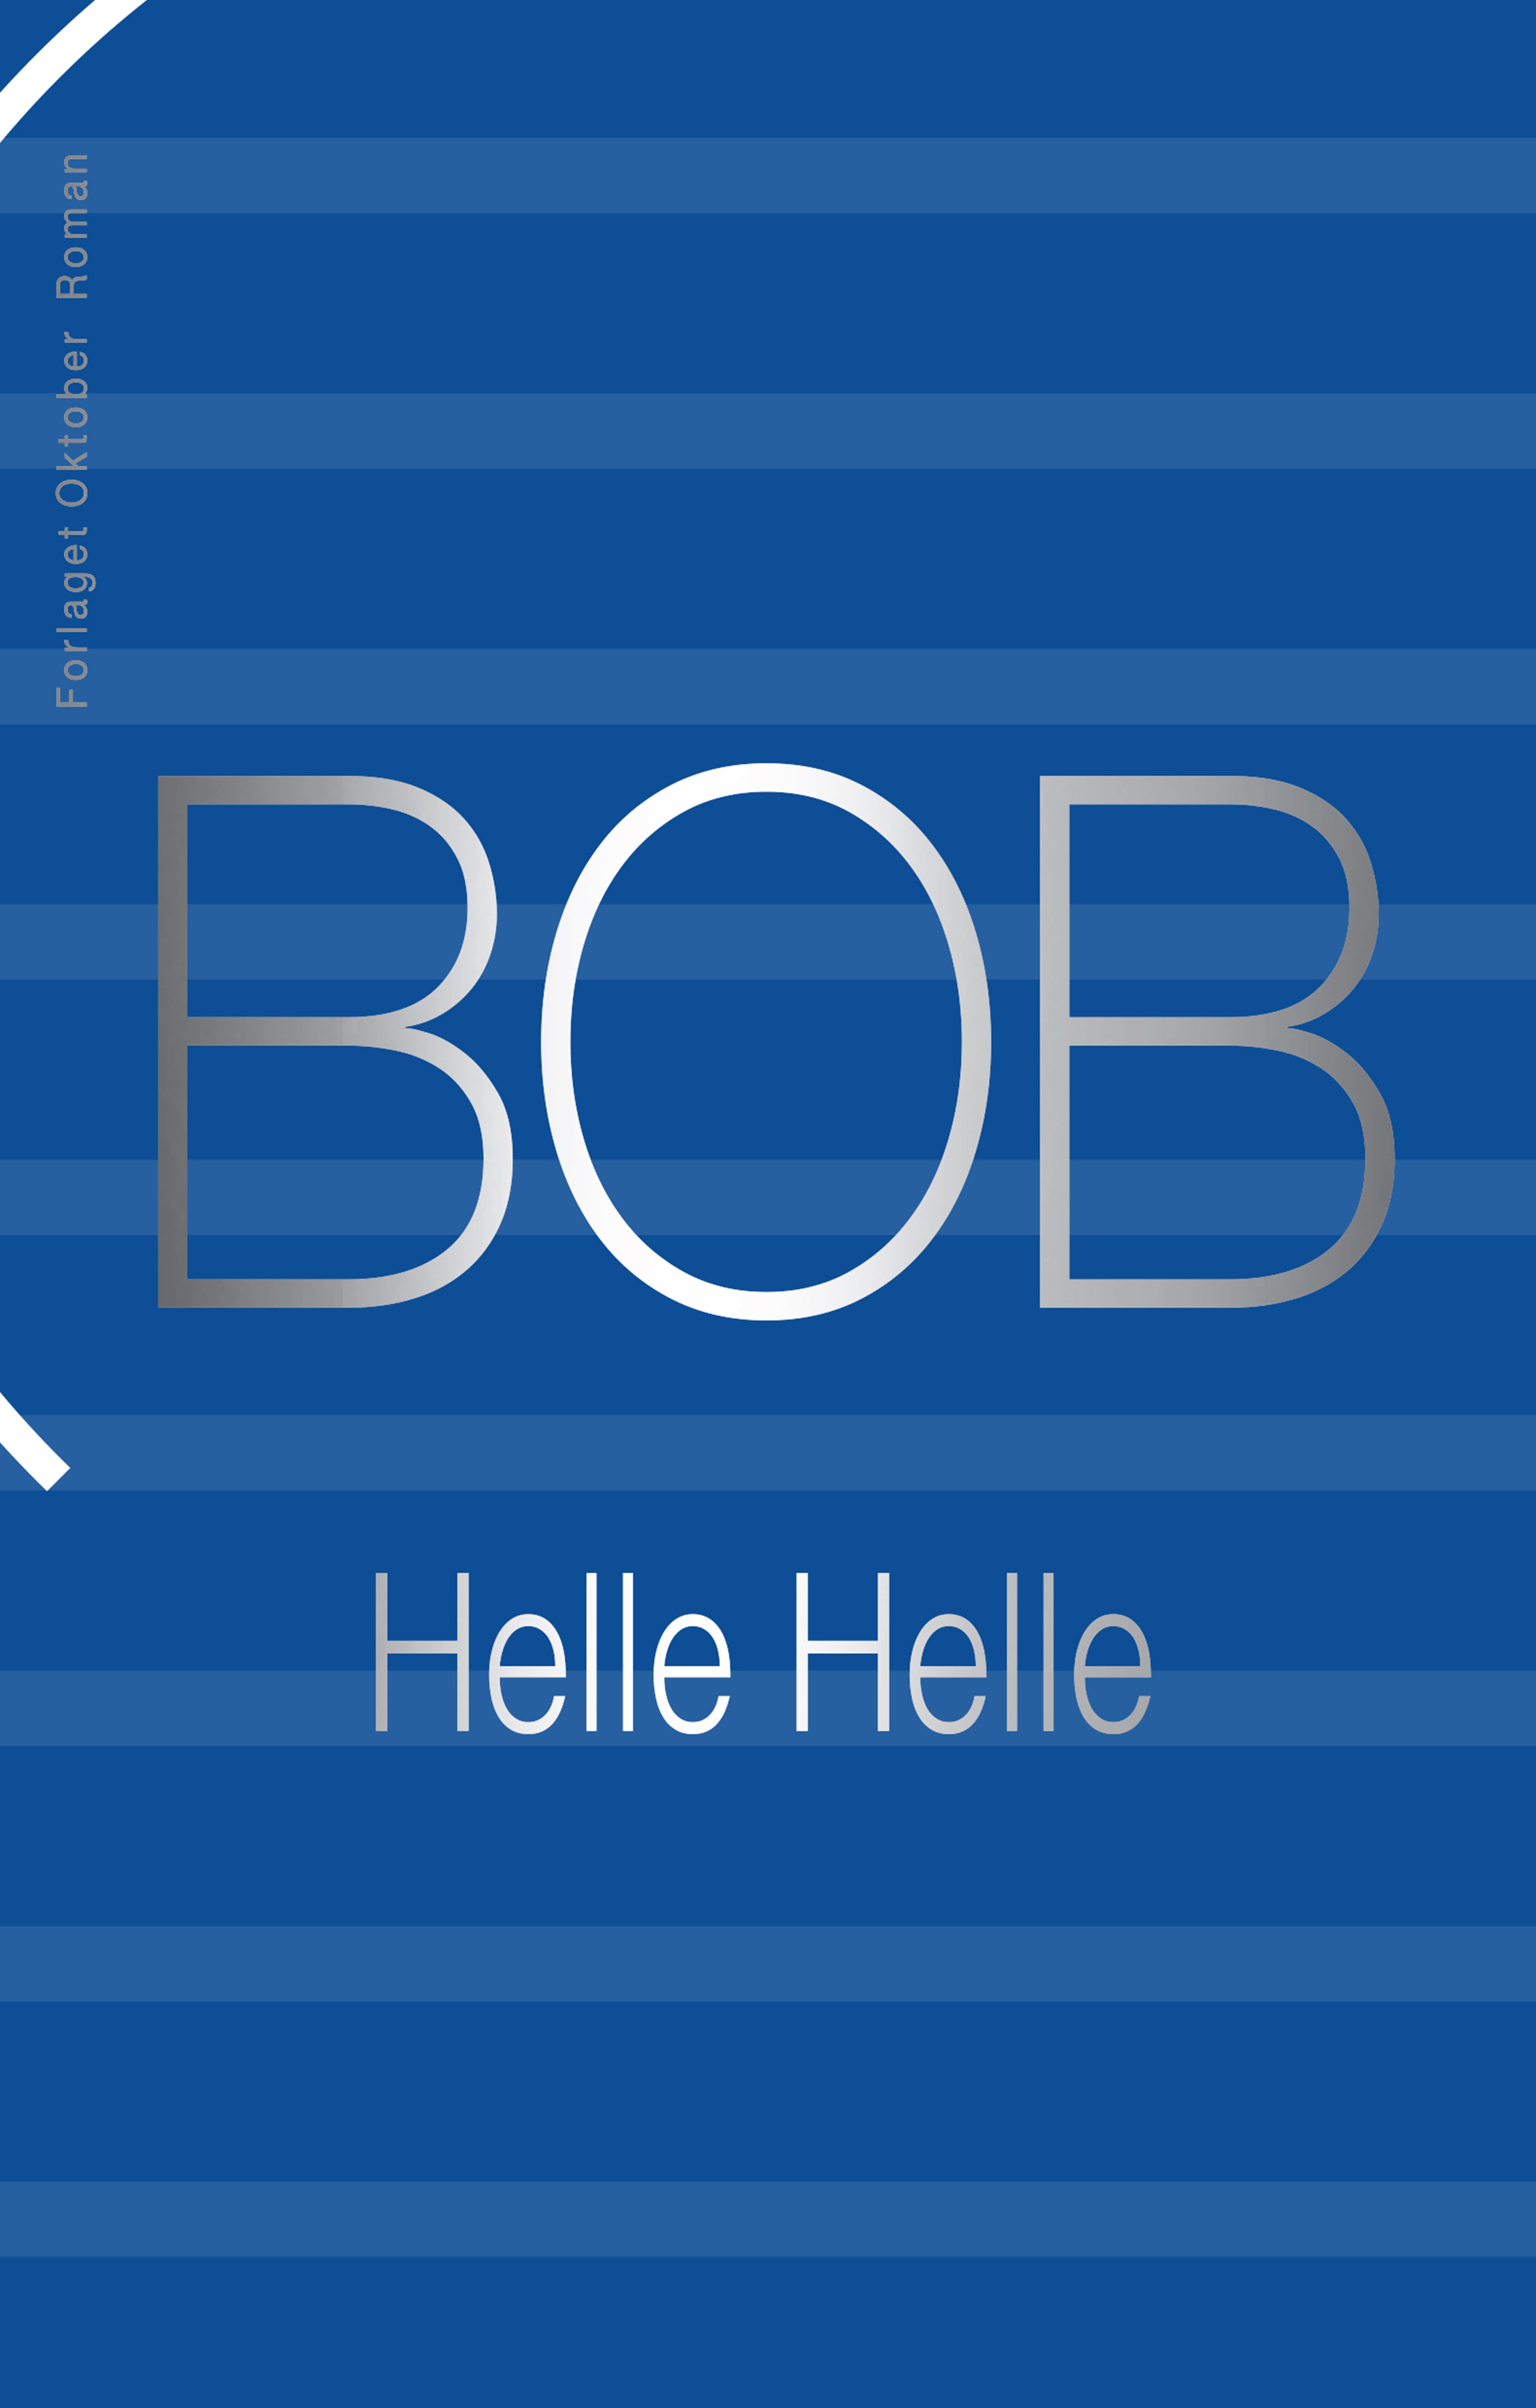 Helle Helle. Bob